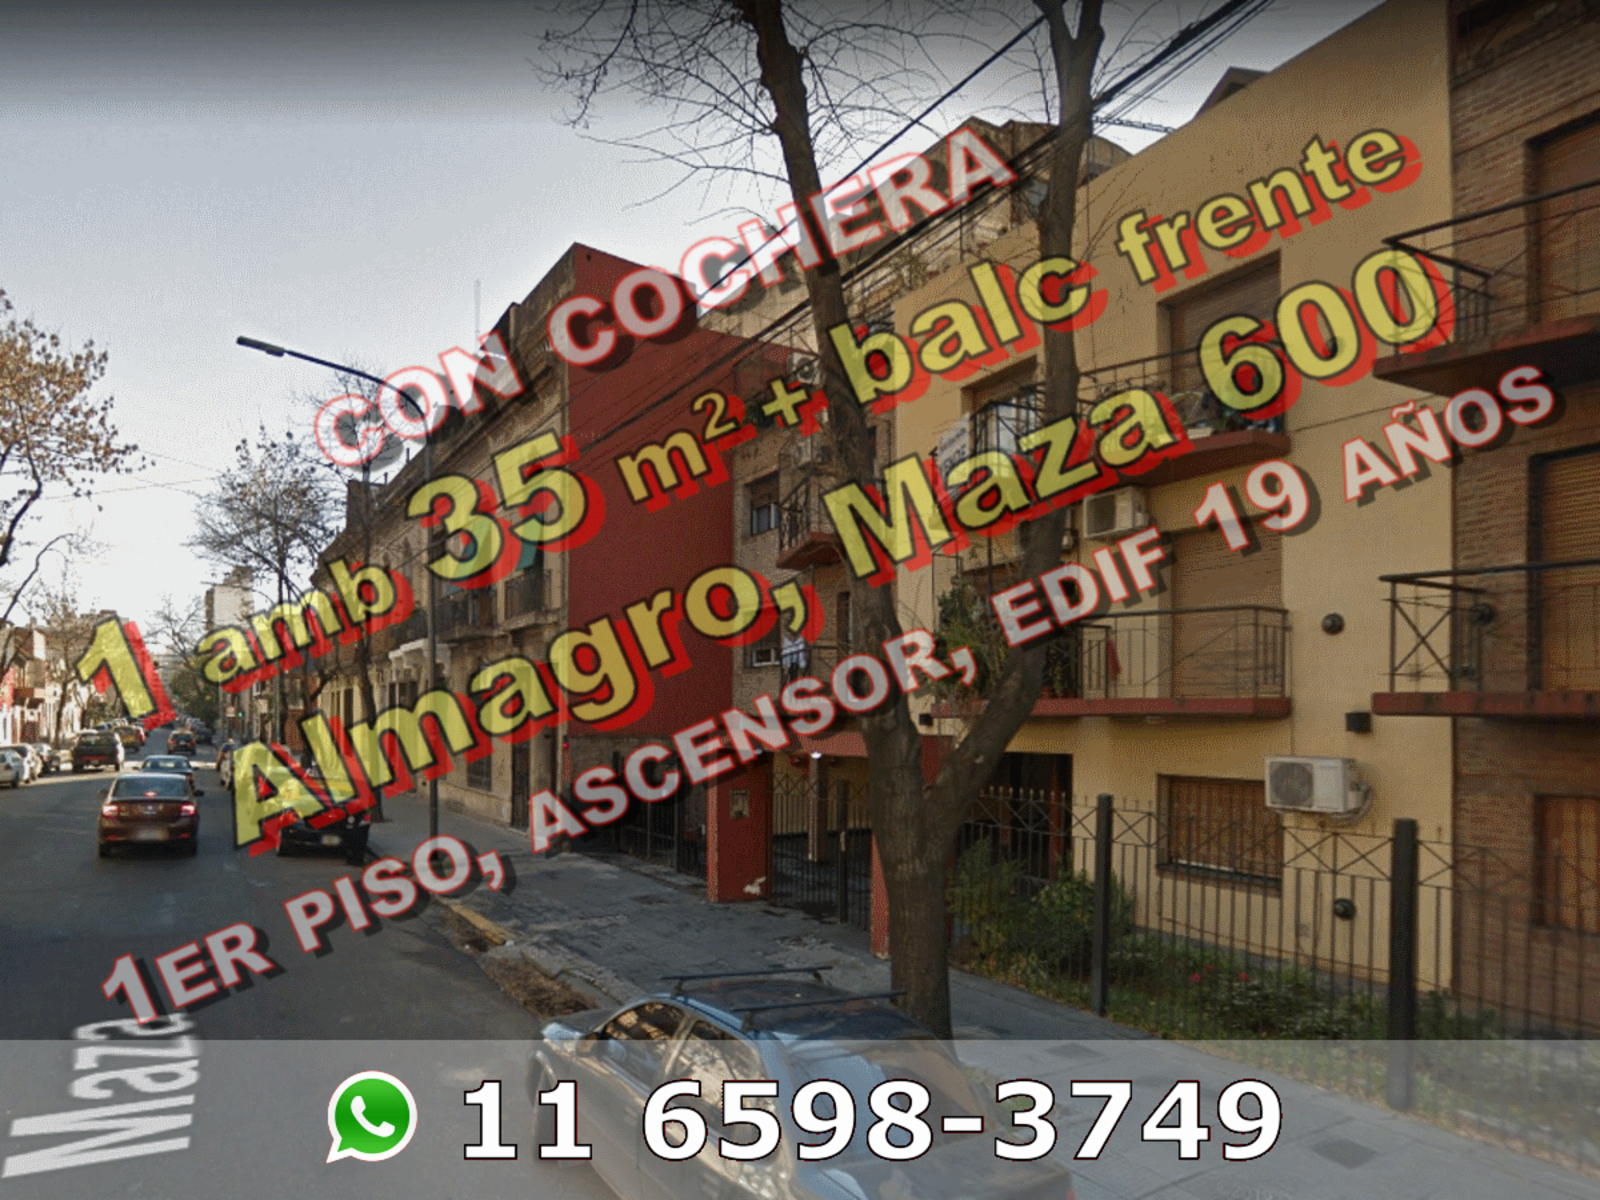 NUEVO PRECIO - Departamento en Venta en Almagro 1 ambiente 35 m2 + balc�n al frente, con cochera - M